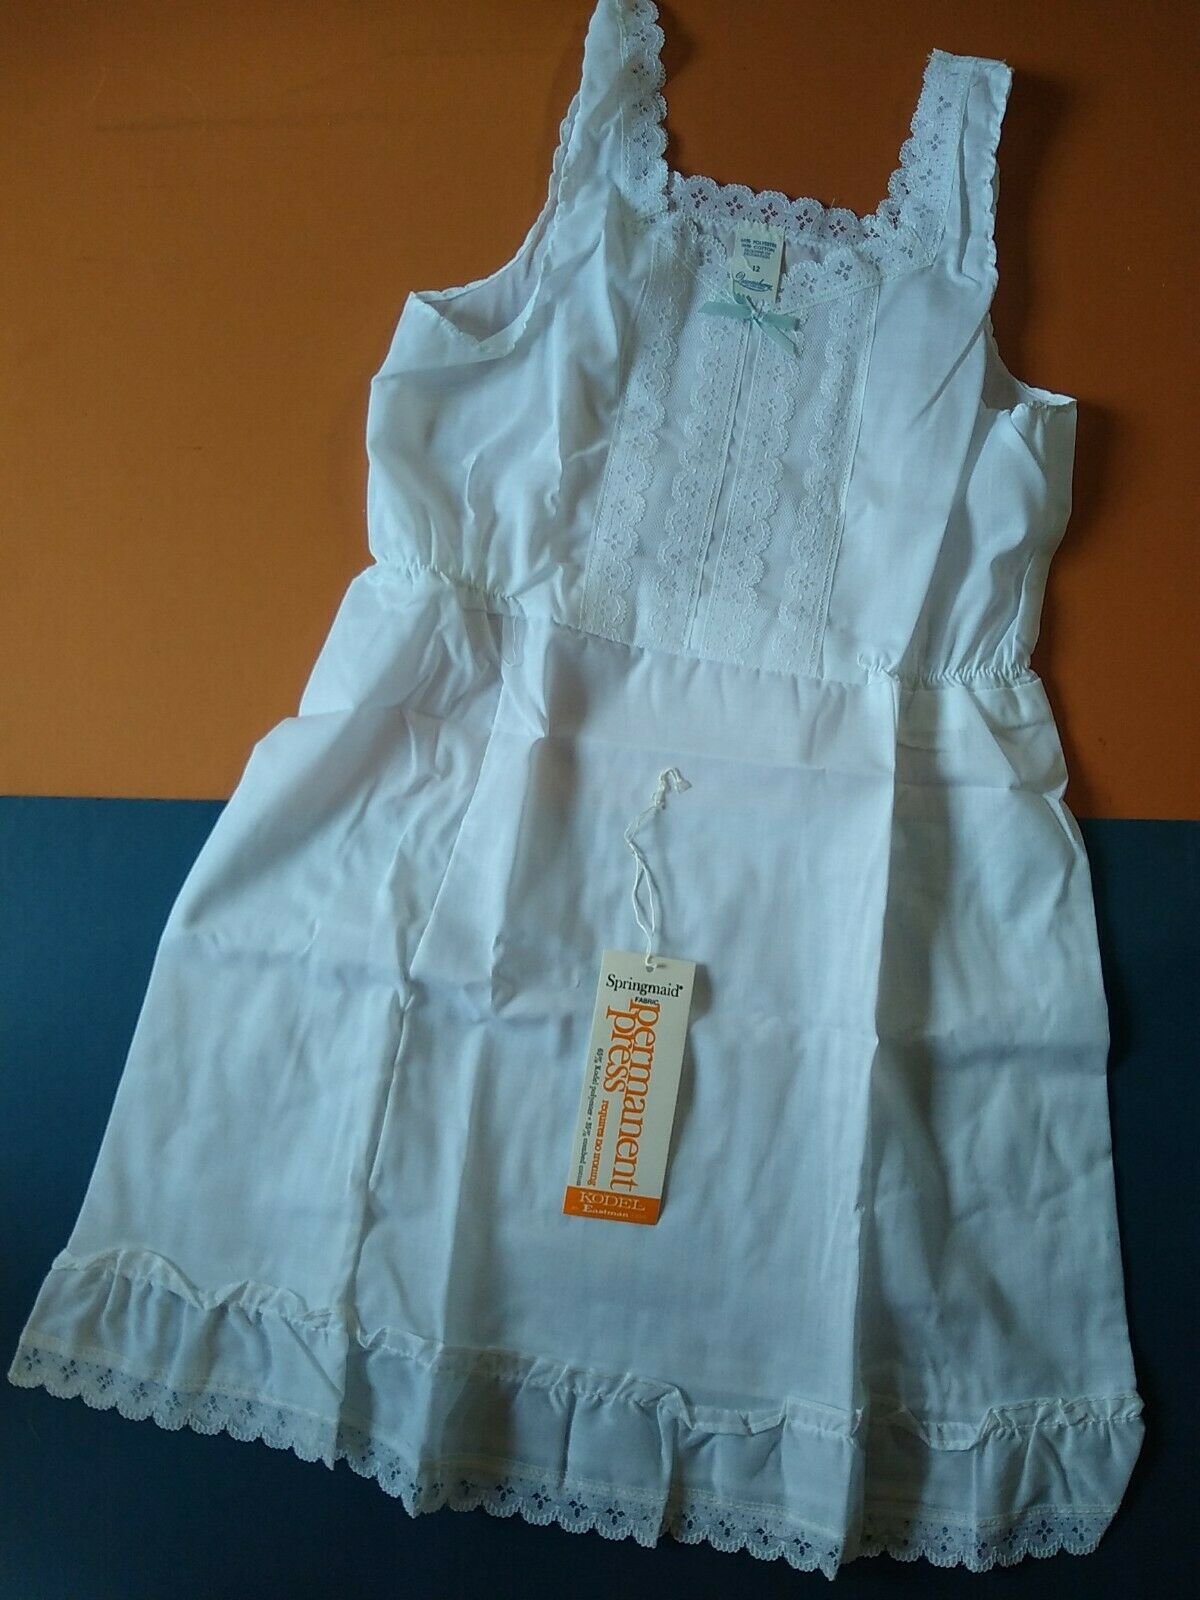 Little Girls Vintage Petticoat Slip White Nighty 12 Blue Bow Springmaid Kodel